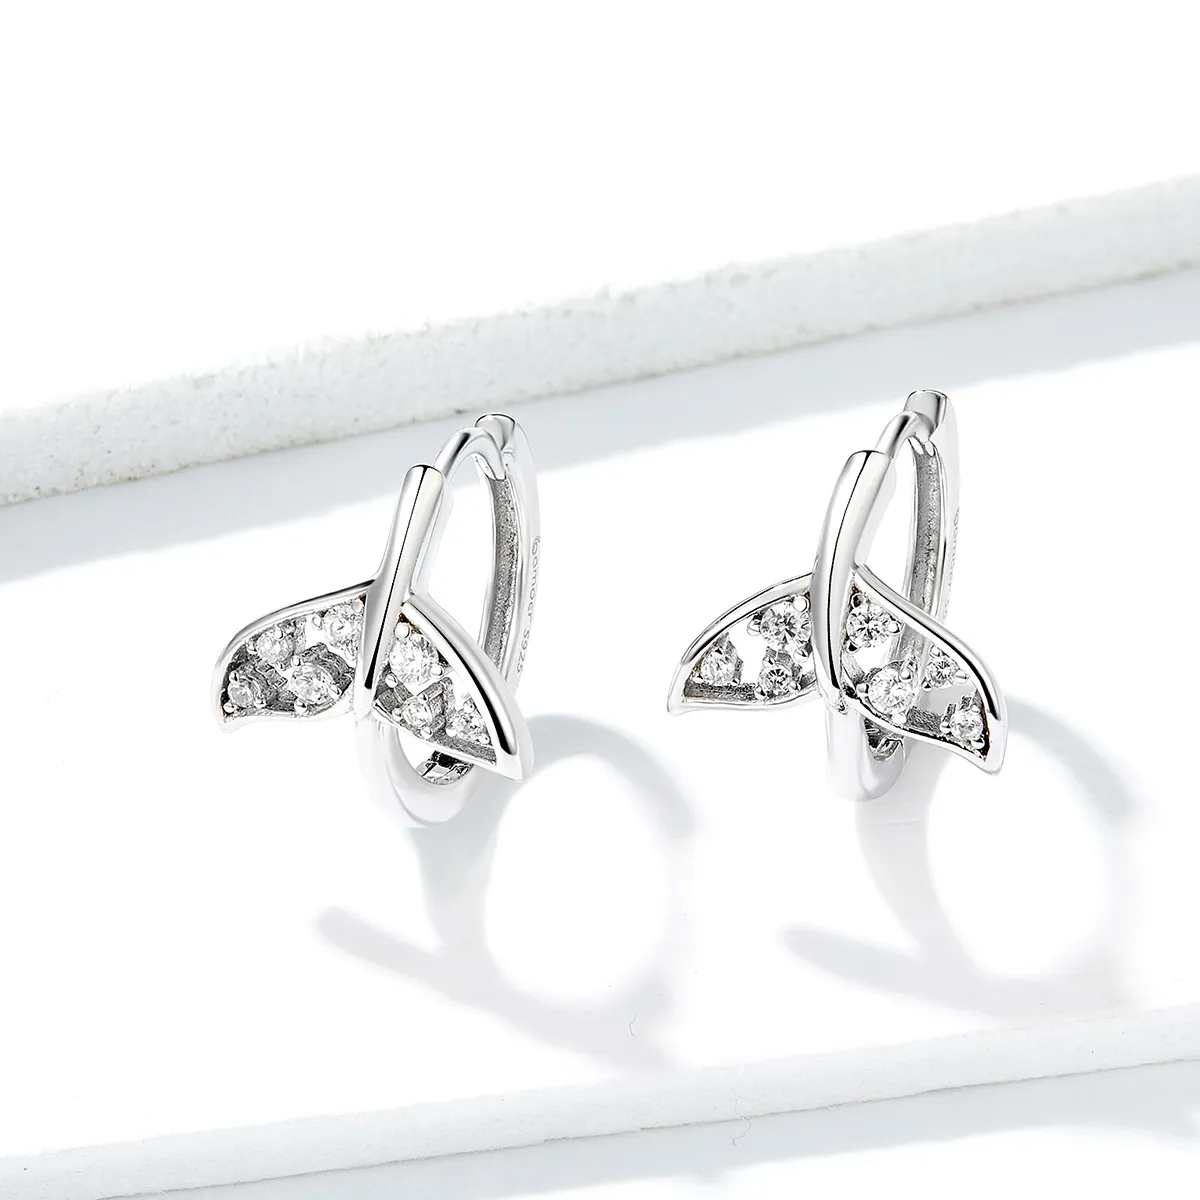 Pandora Style Silver Mermaid Tail Hoop Earrings - BSE259